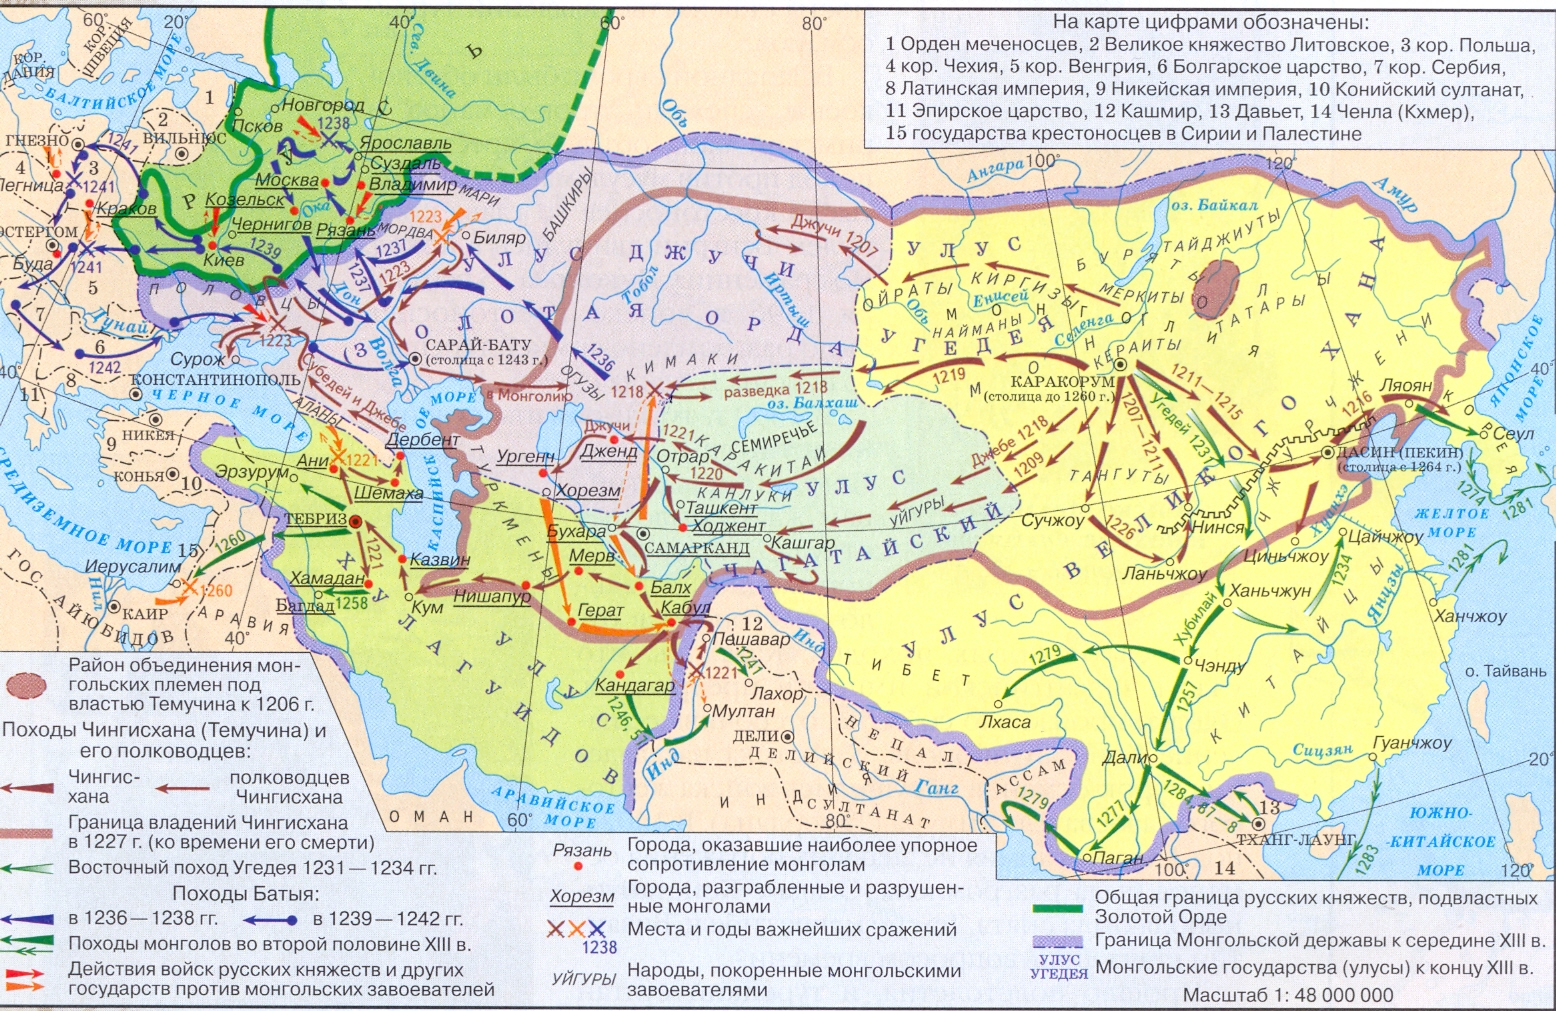 Хана царство. Карта завоеваний монголов в 13 веке. Монгольские завоевания 13-15 века карта. Завоевания Чингисхана карта. Монгольские завоевания в 13 веке карта.